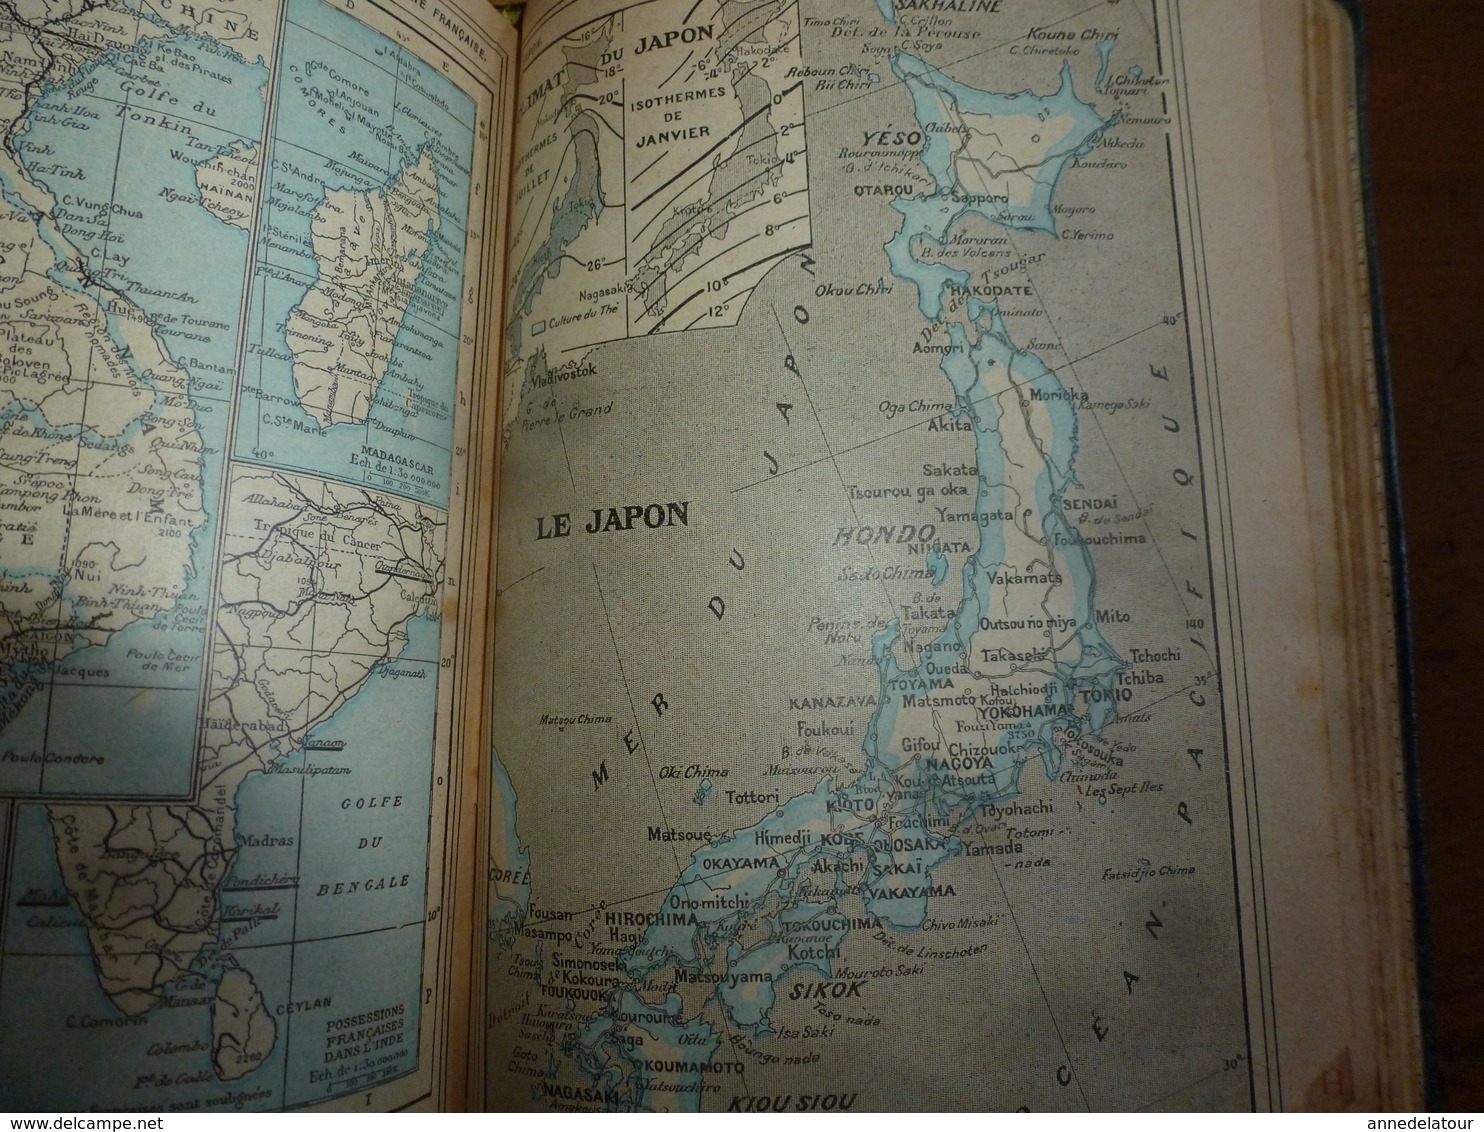 1911 Tremblement de terre à ROGNES;Avions;etc(éd. luxe) ALMANACH HACHETTE (Encyclopédie Populaire de la Vie Pratique);